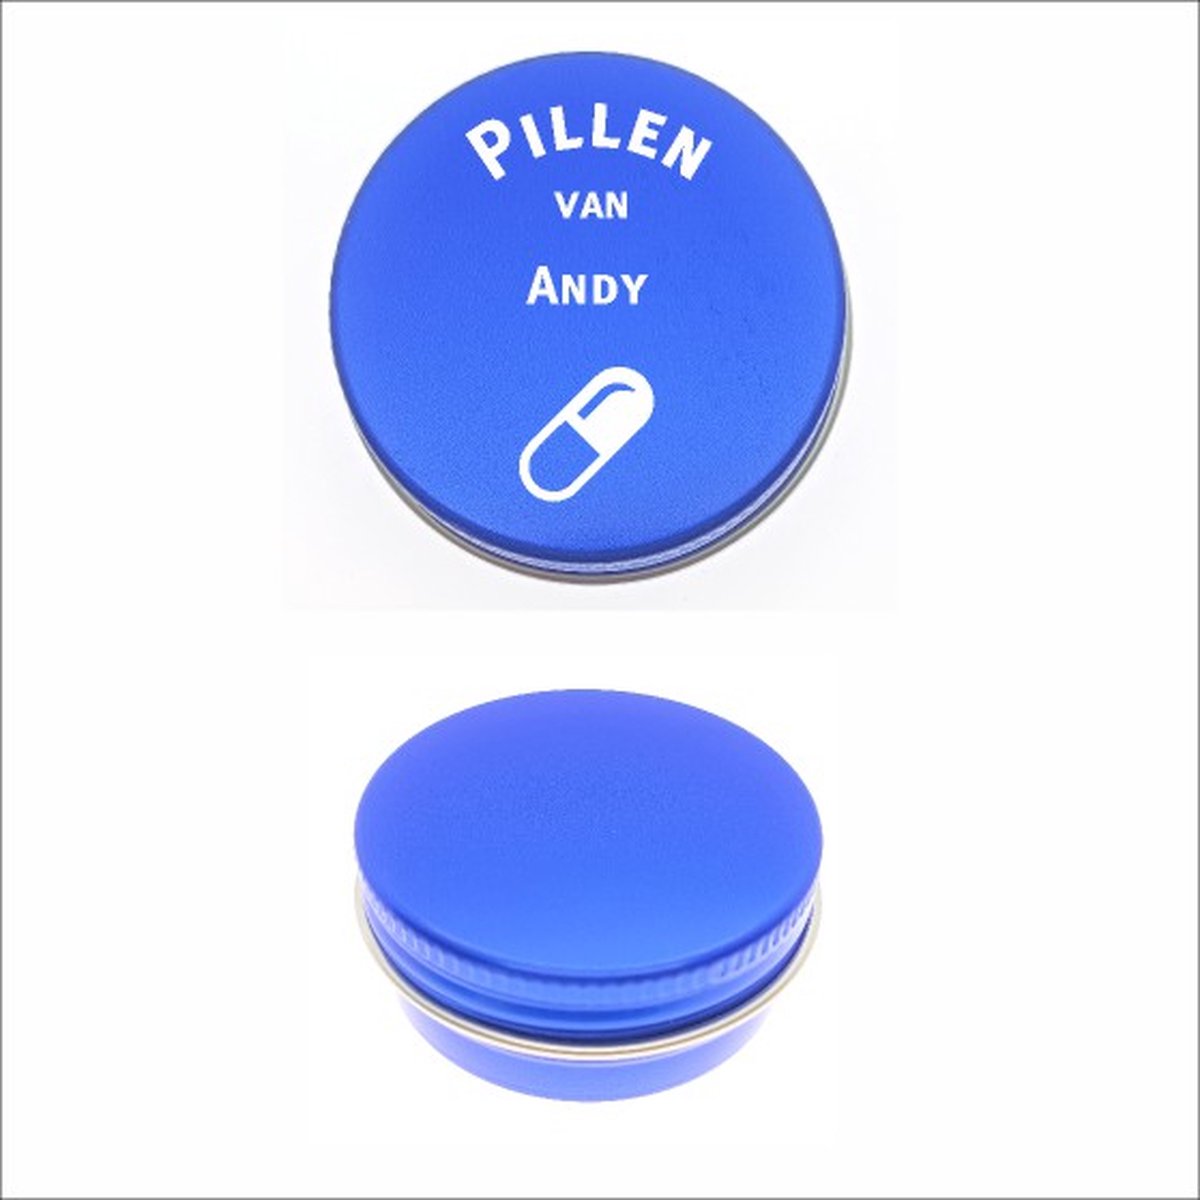 Pillen Blikje Met Naam Gravering - Andy